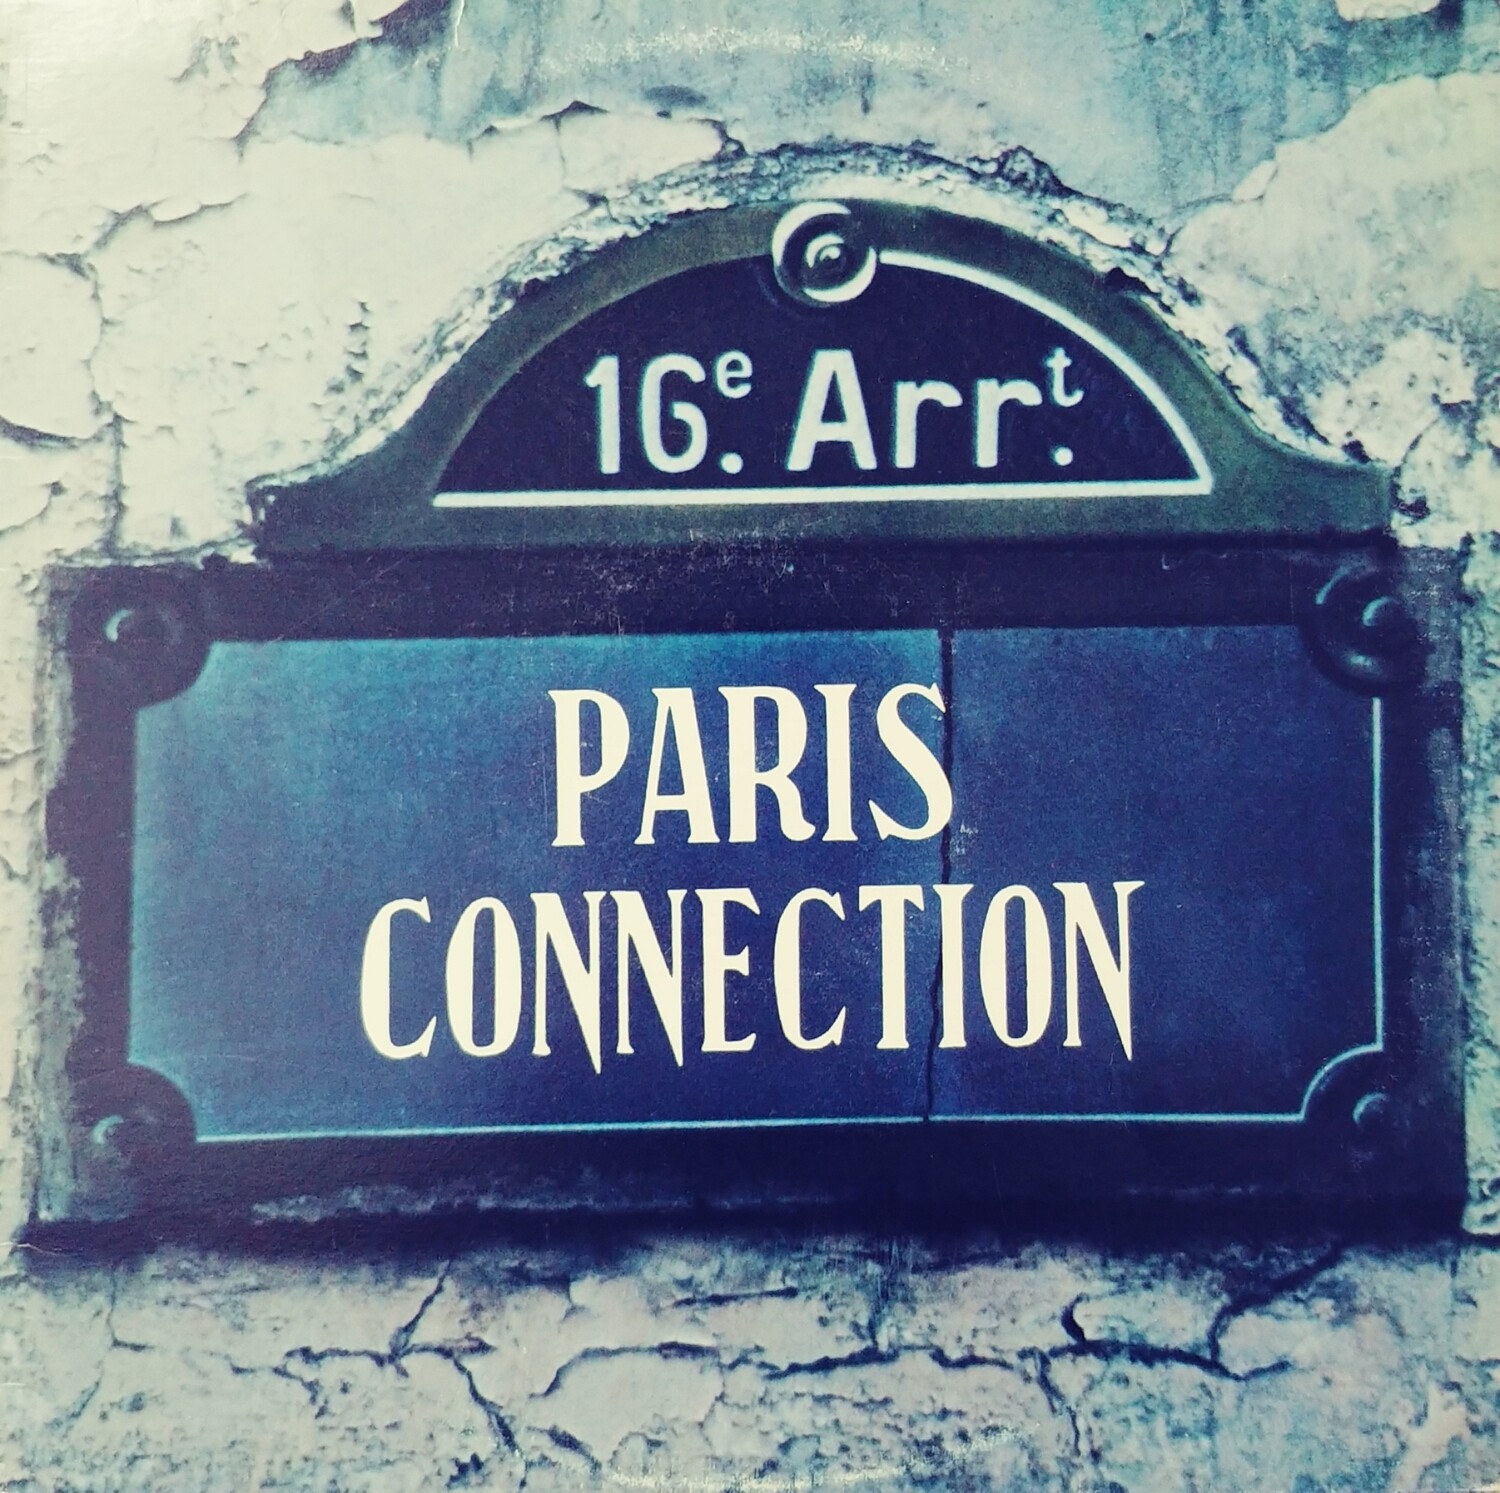 Paris Connection - 16e Arrt